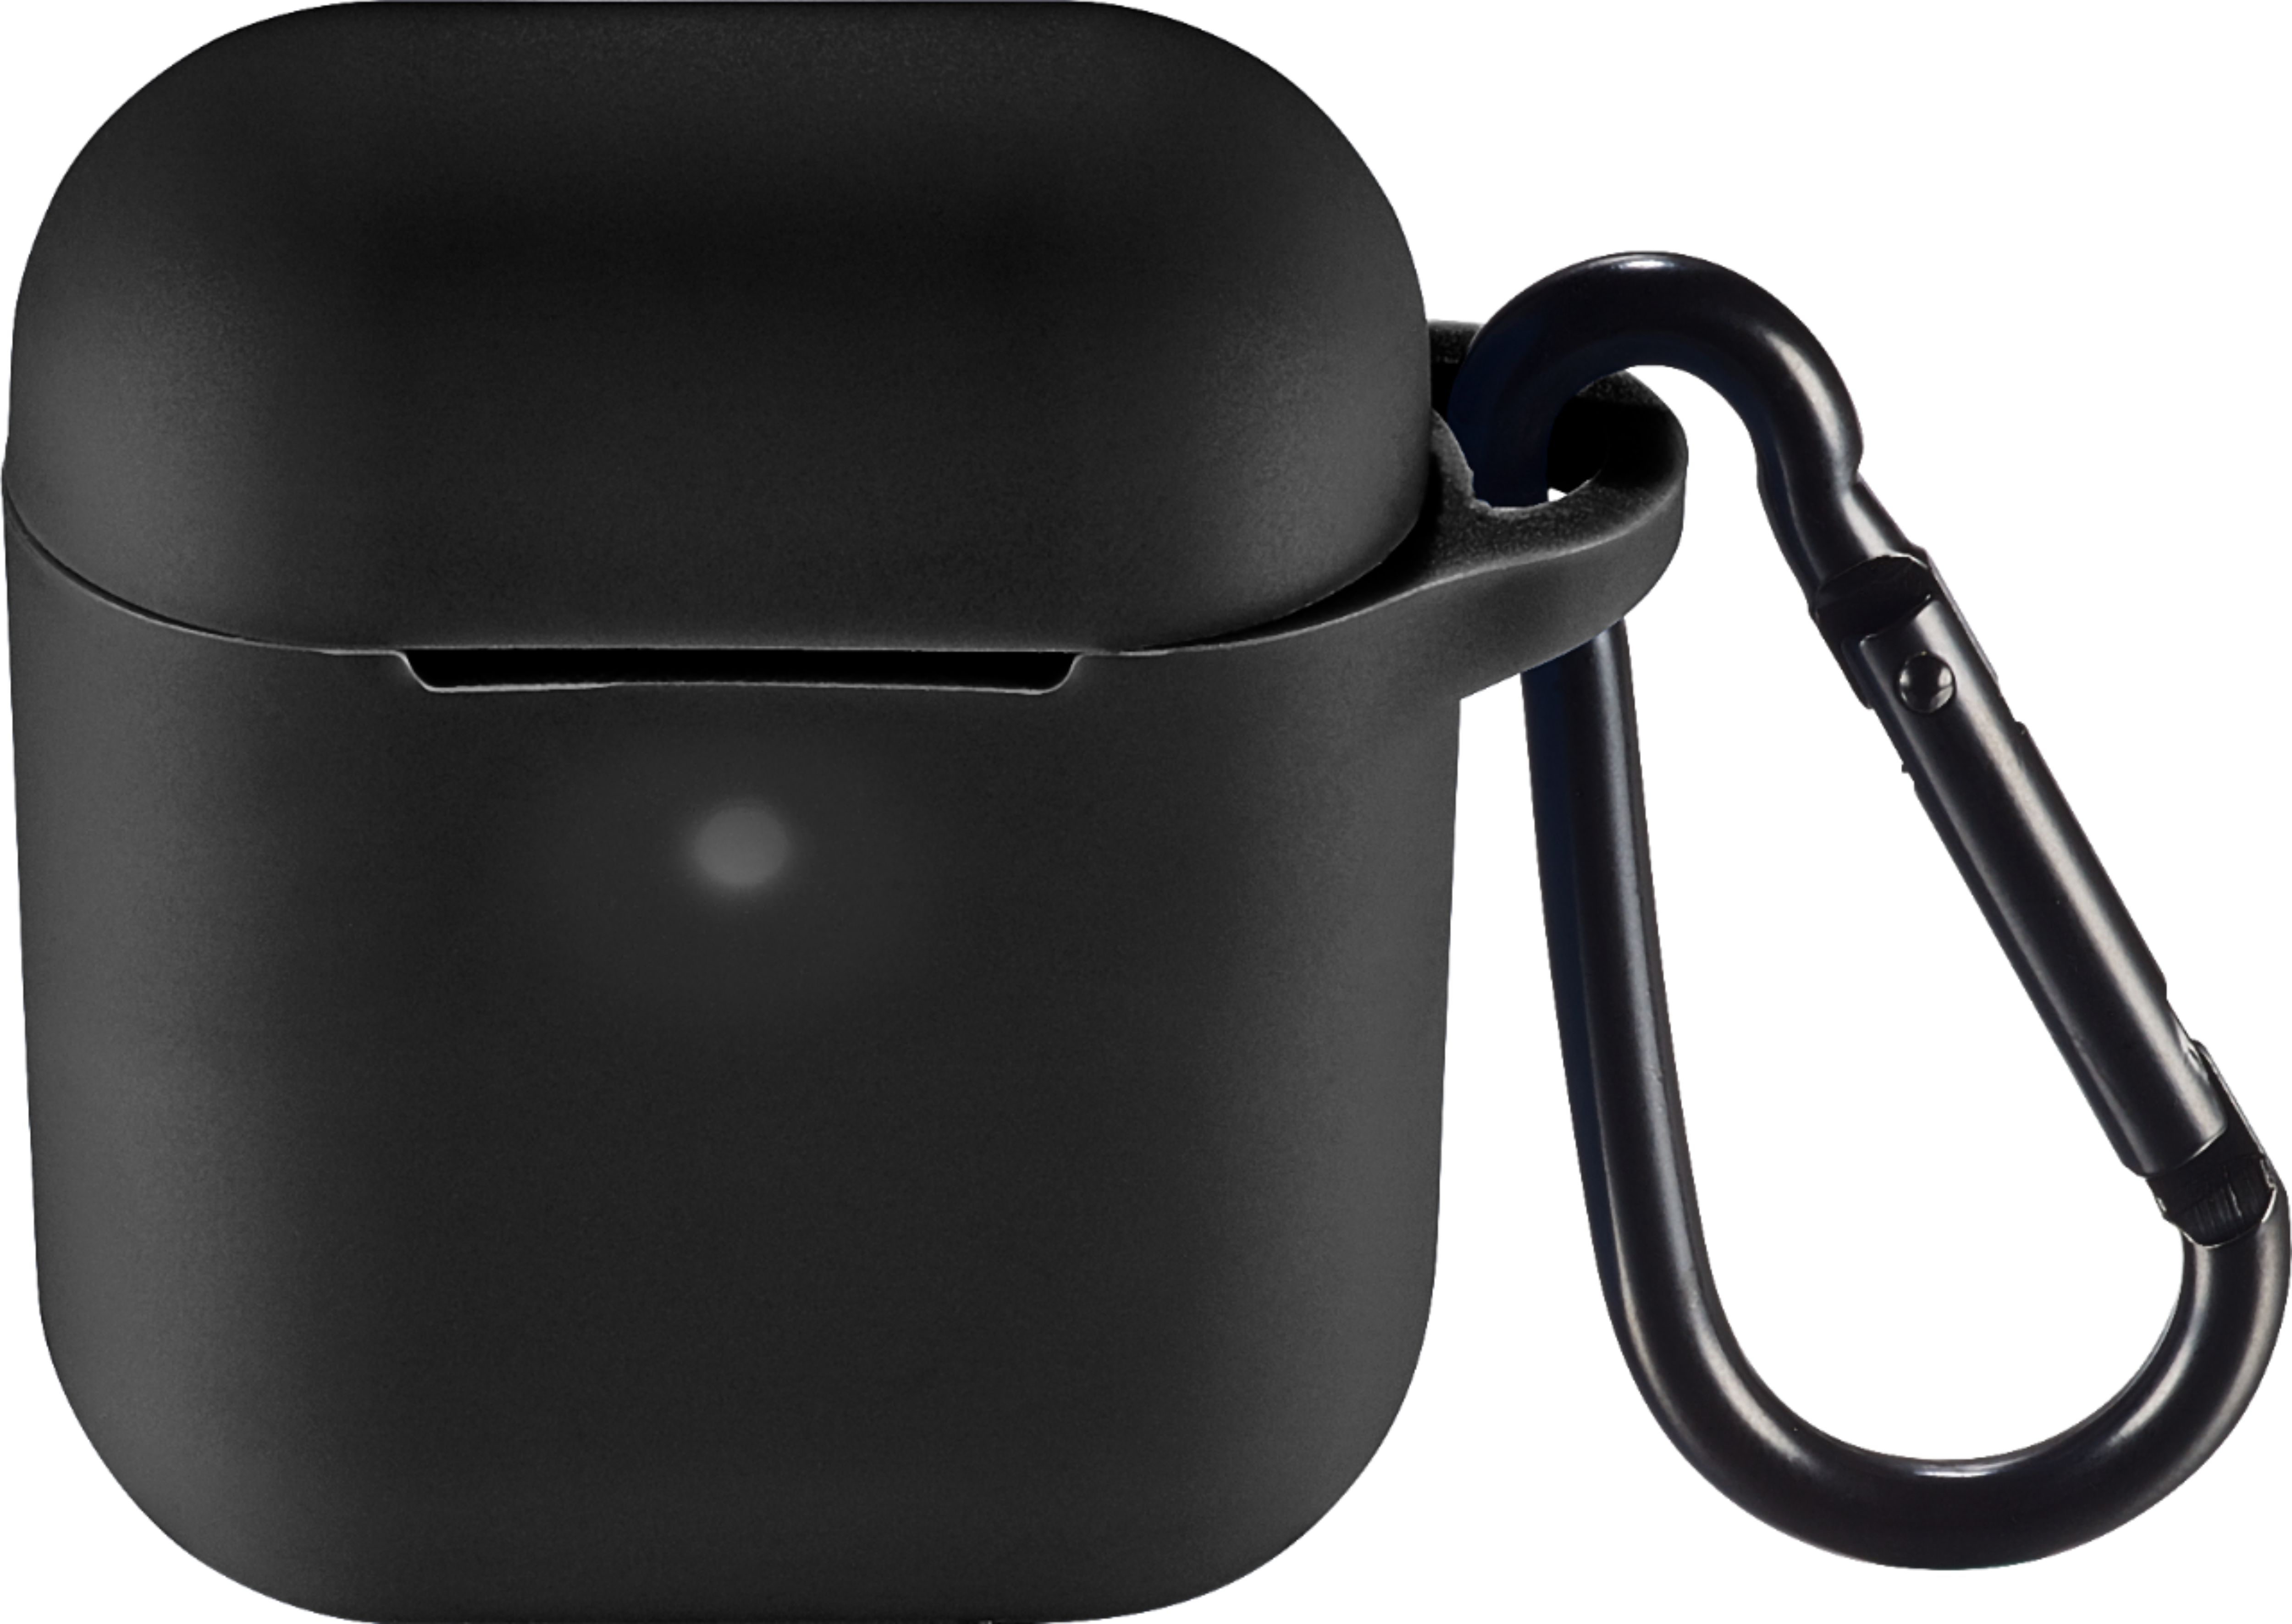 inflation Sømand længde Insignia™ Case for Apple AirPods Black NS-CAHAPCC-BK - Best Buy